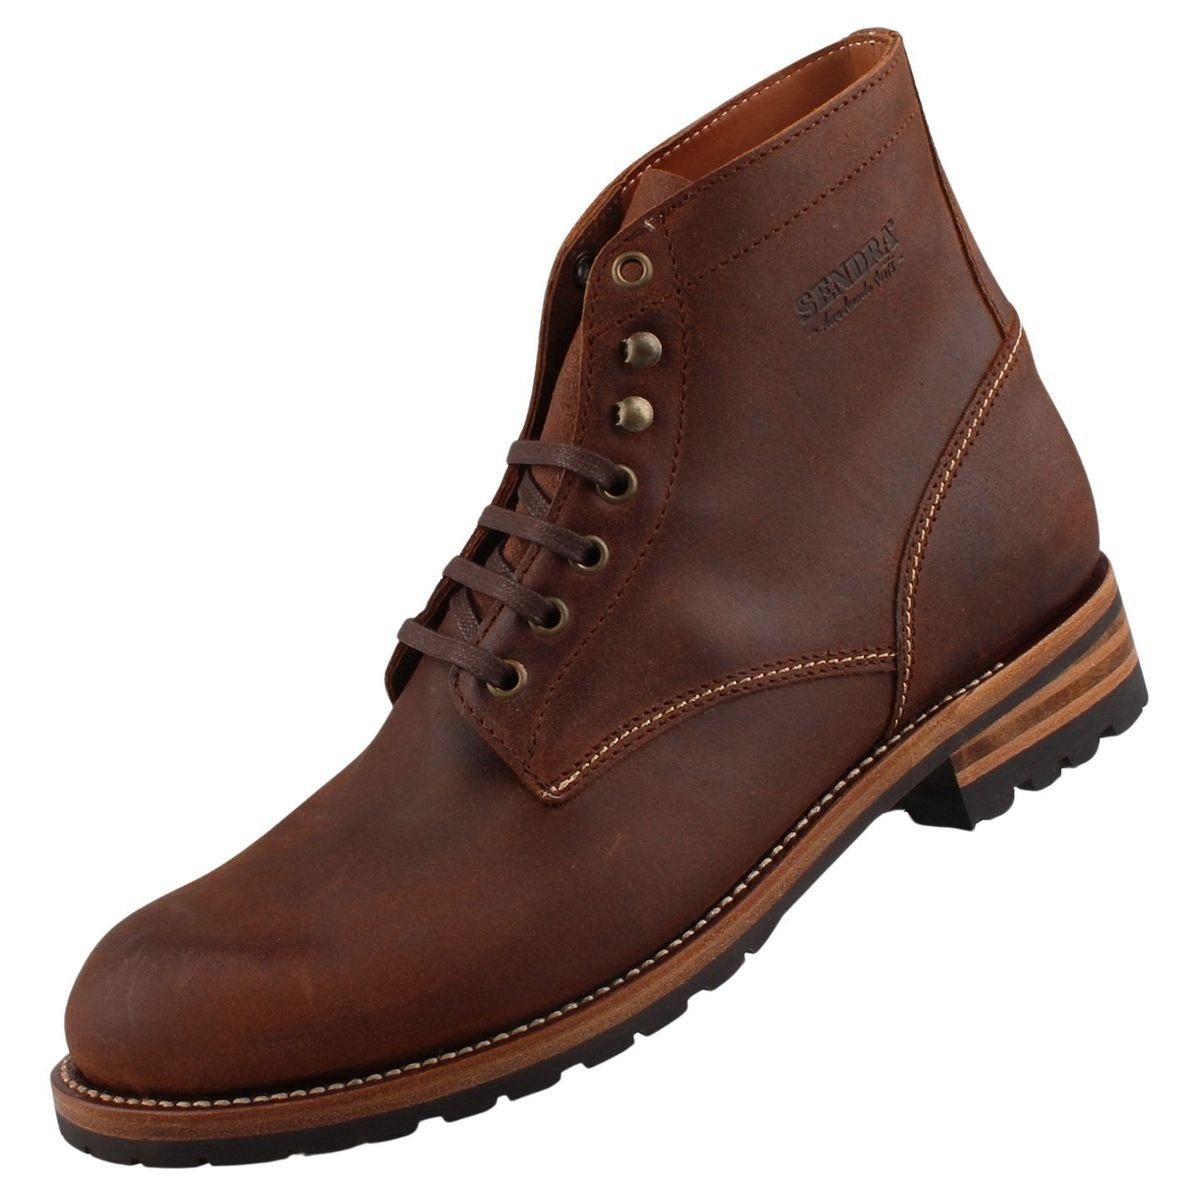 Sendra Boots 18642SD8-Waxy Comander Stiefel